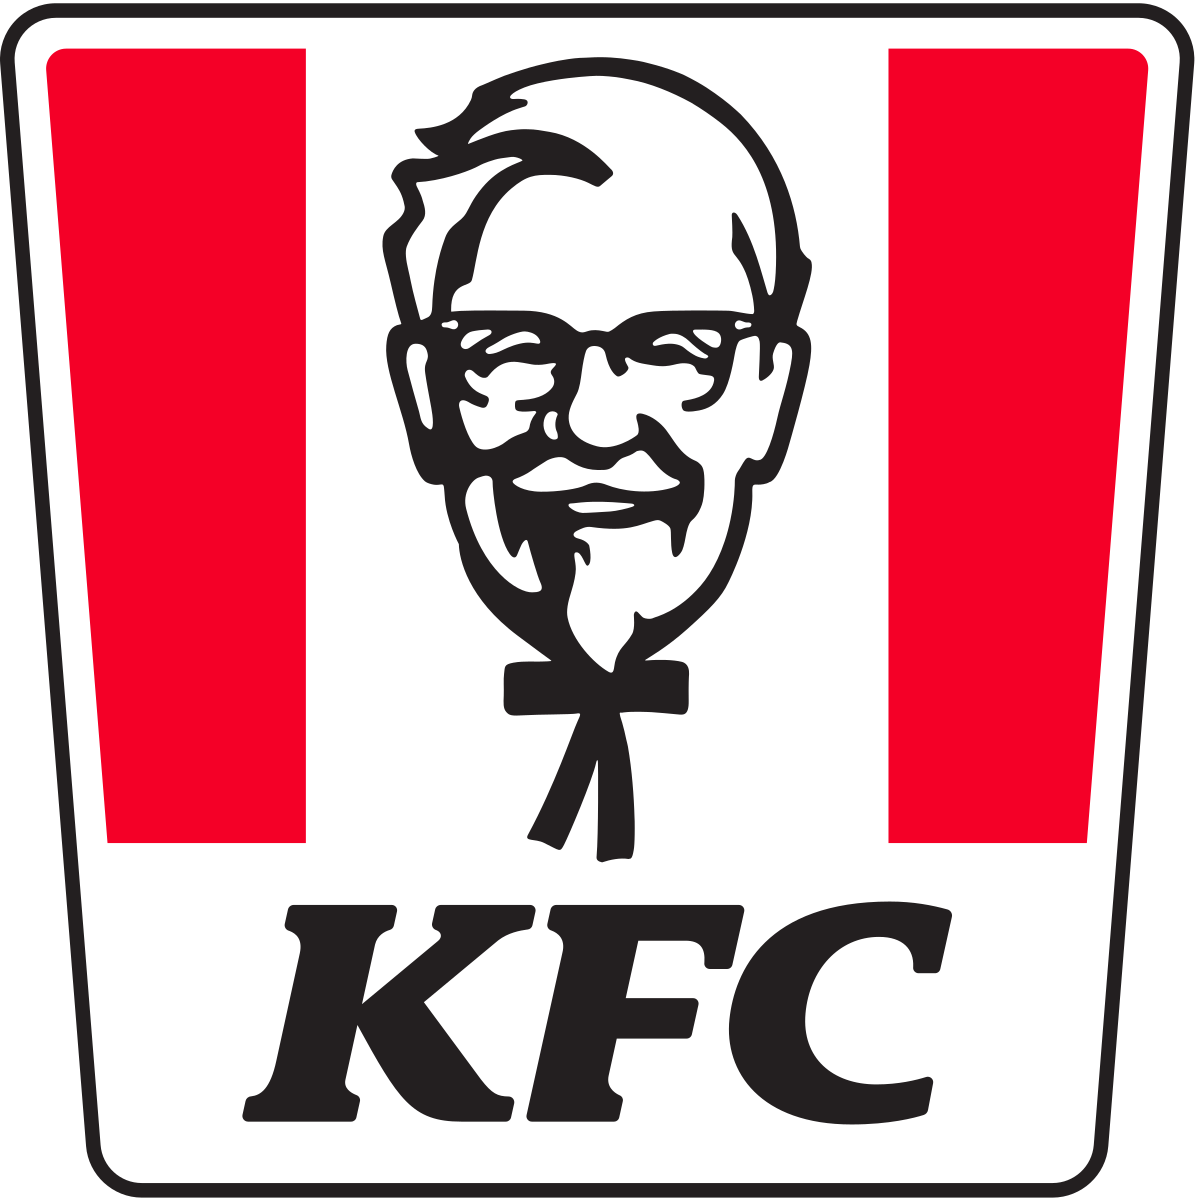 The Kfc Logo - KibrisPDR